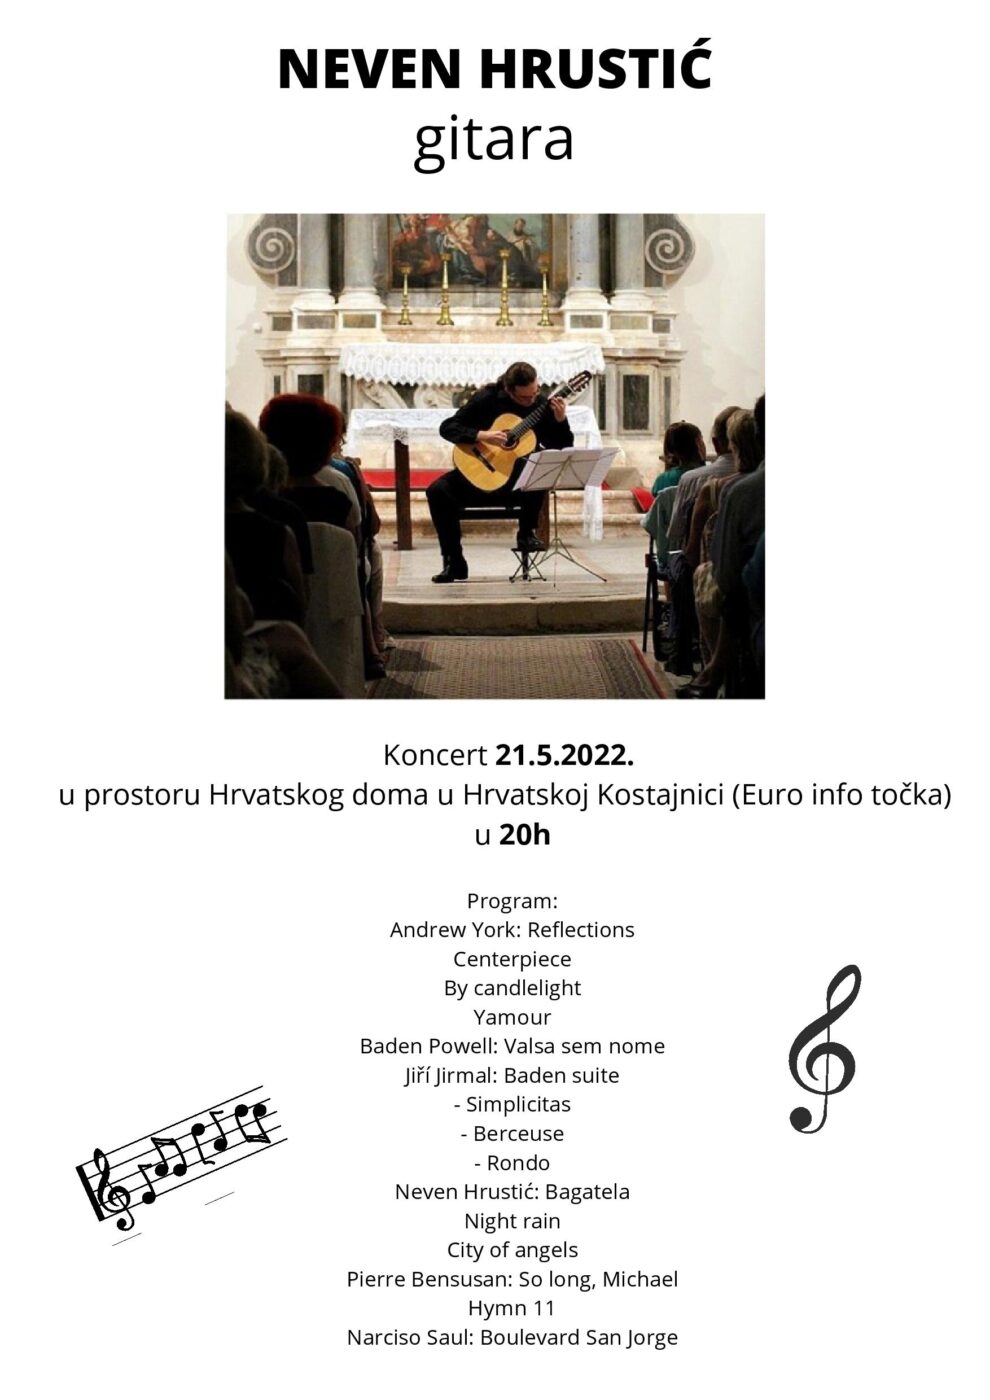 NEVEN HRUSTIĆ gitara- koncert 21.05.2022. u prostoru Hrvatskog doma